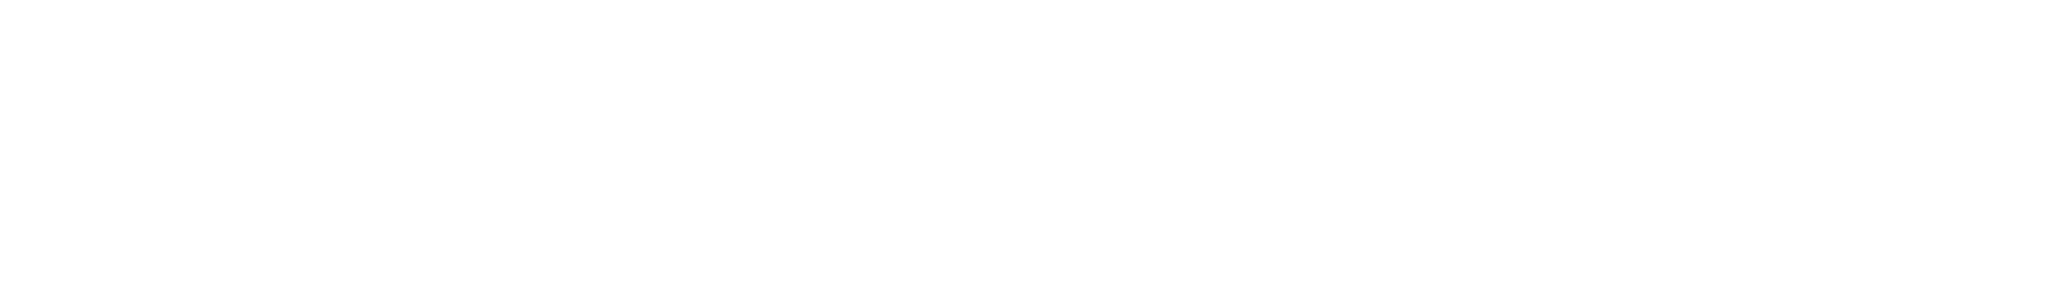 Logotyp Ministerstwa Kultury i Dziedzictwa Narodowego i Narodowego Instytutu Muzyki i Tańca